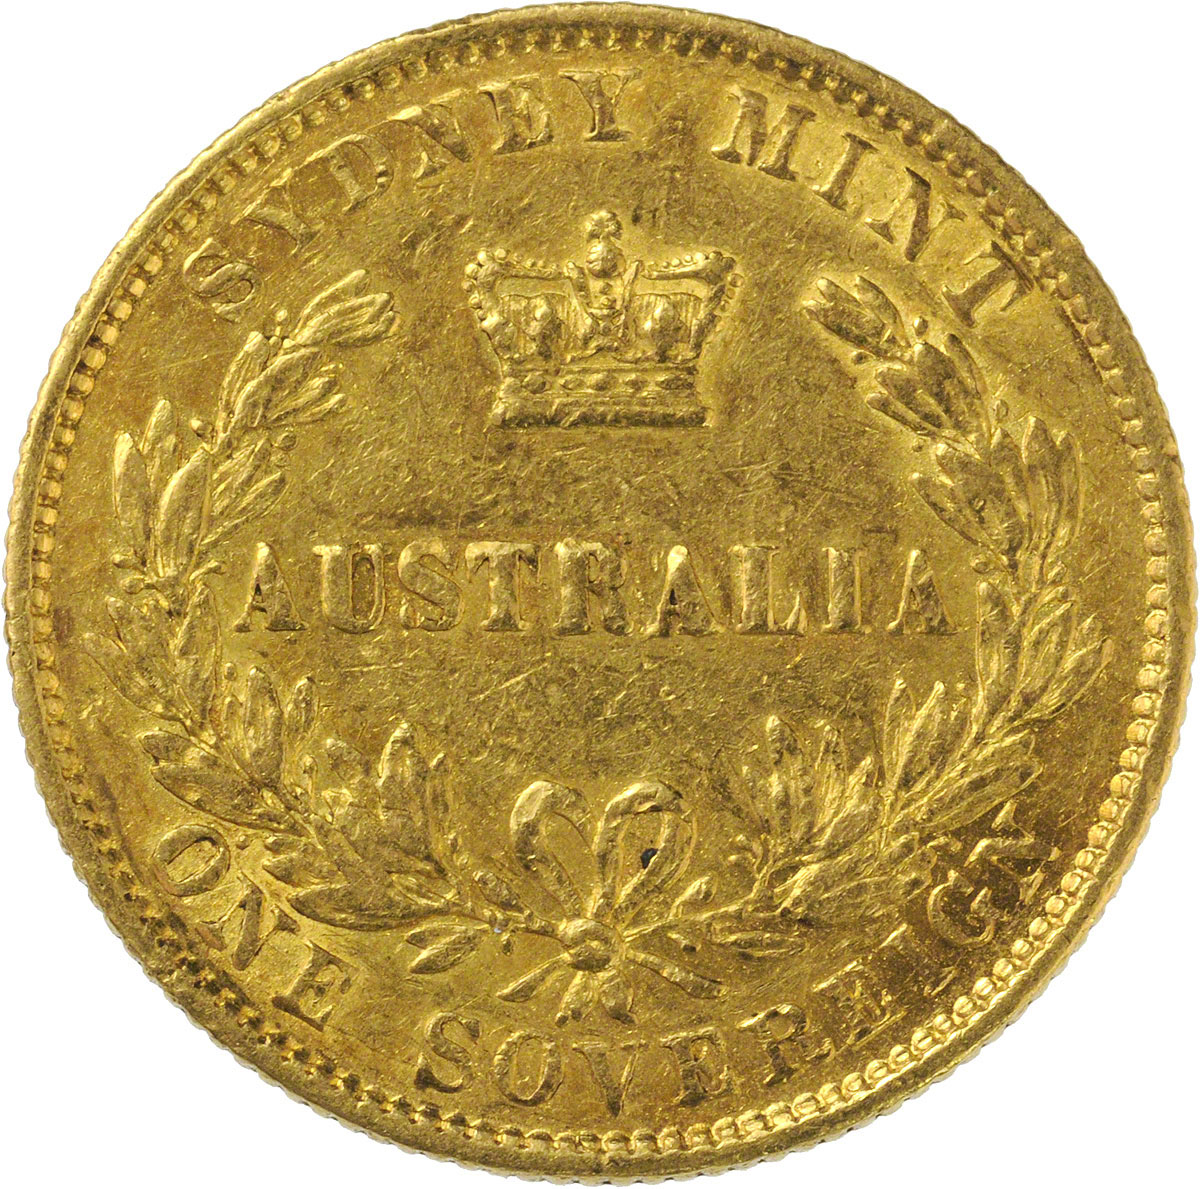 1866 Βικτώρια (Νομισματοκοπείο Σίδνεϊ)